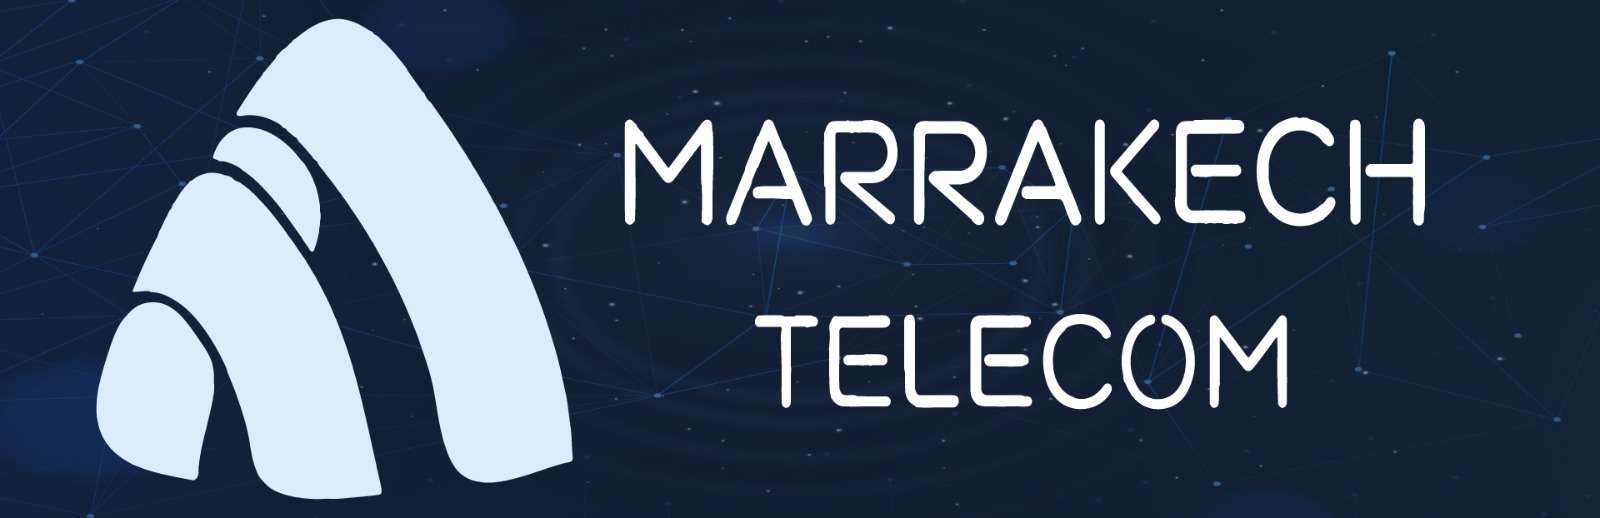 Marrakech Telecom